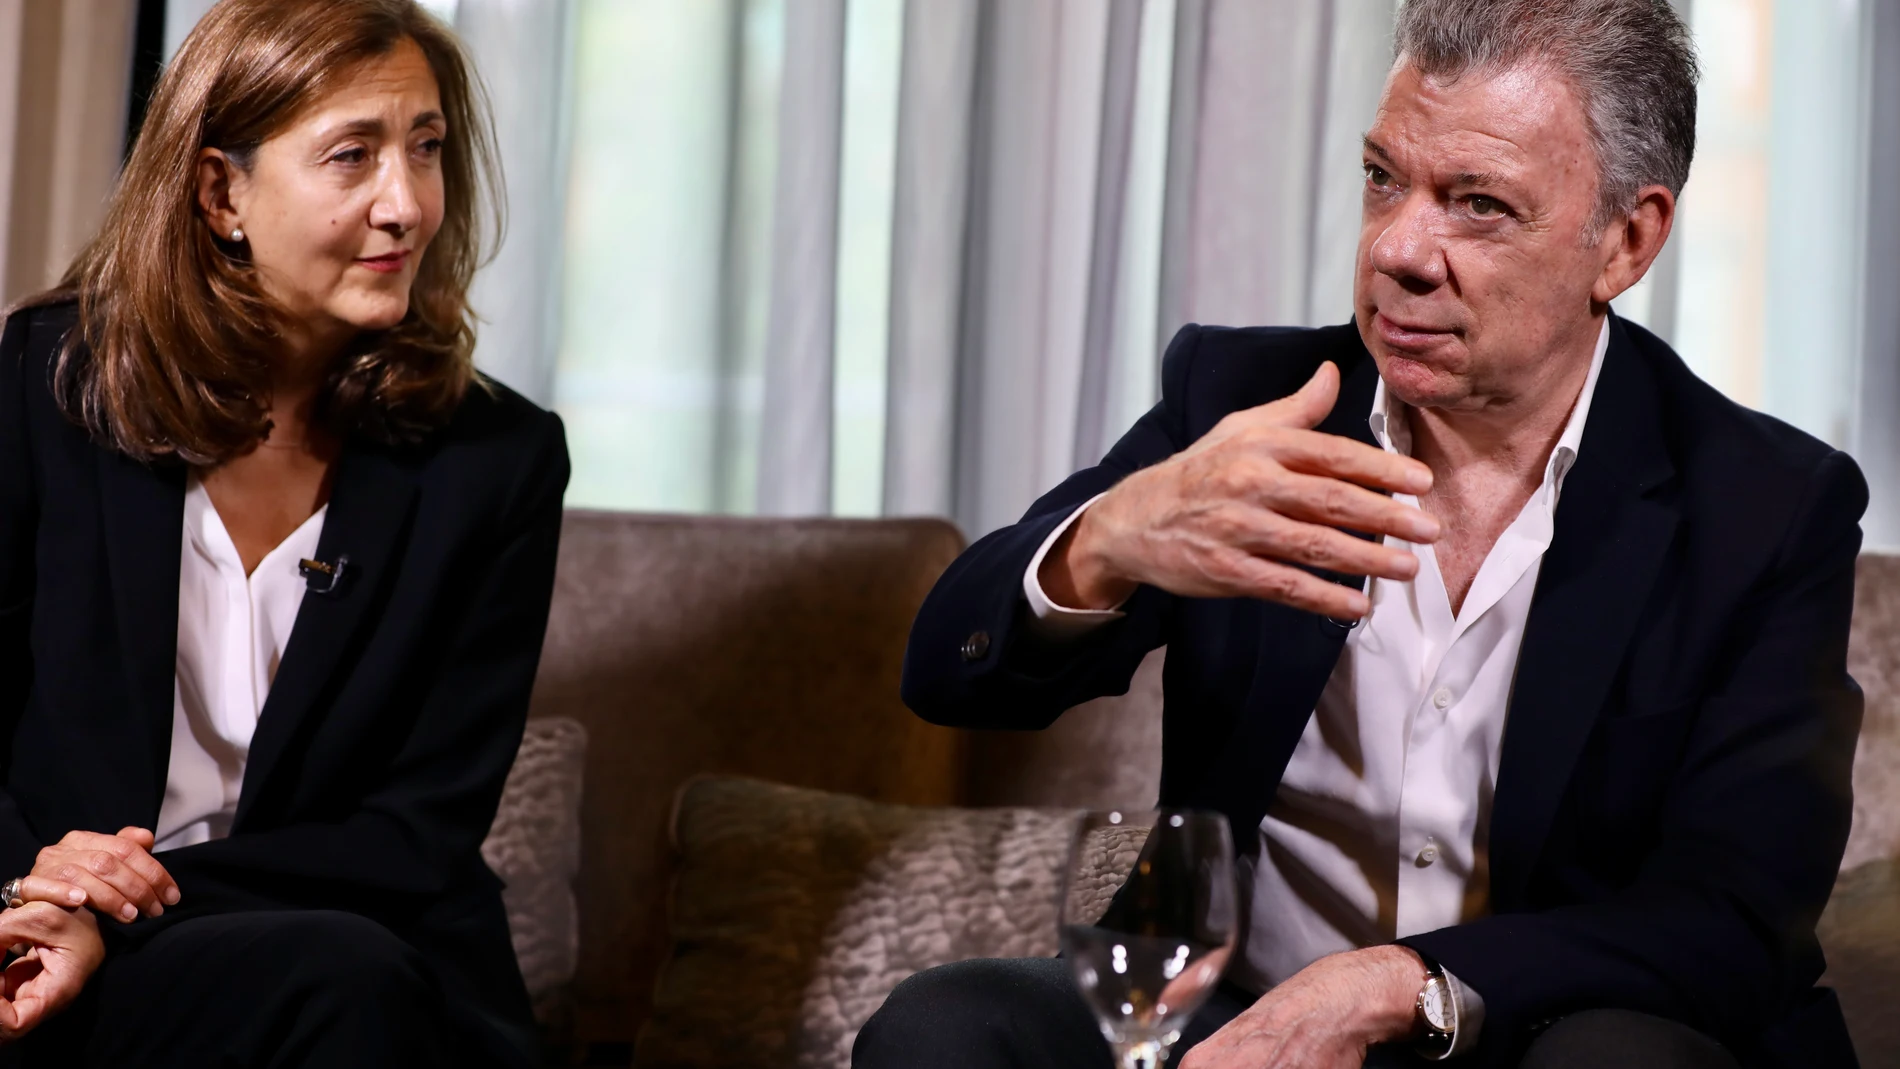 Juan Manuel Santos, expresidente de Colombia e Ingrid Betancourt, política secuestrada por las FARC, dialogan en el libro “Una conversación pendiente”.￼￼￼